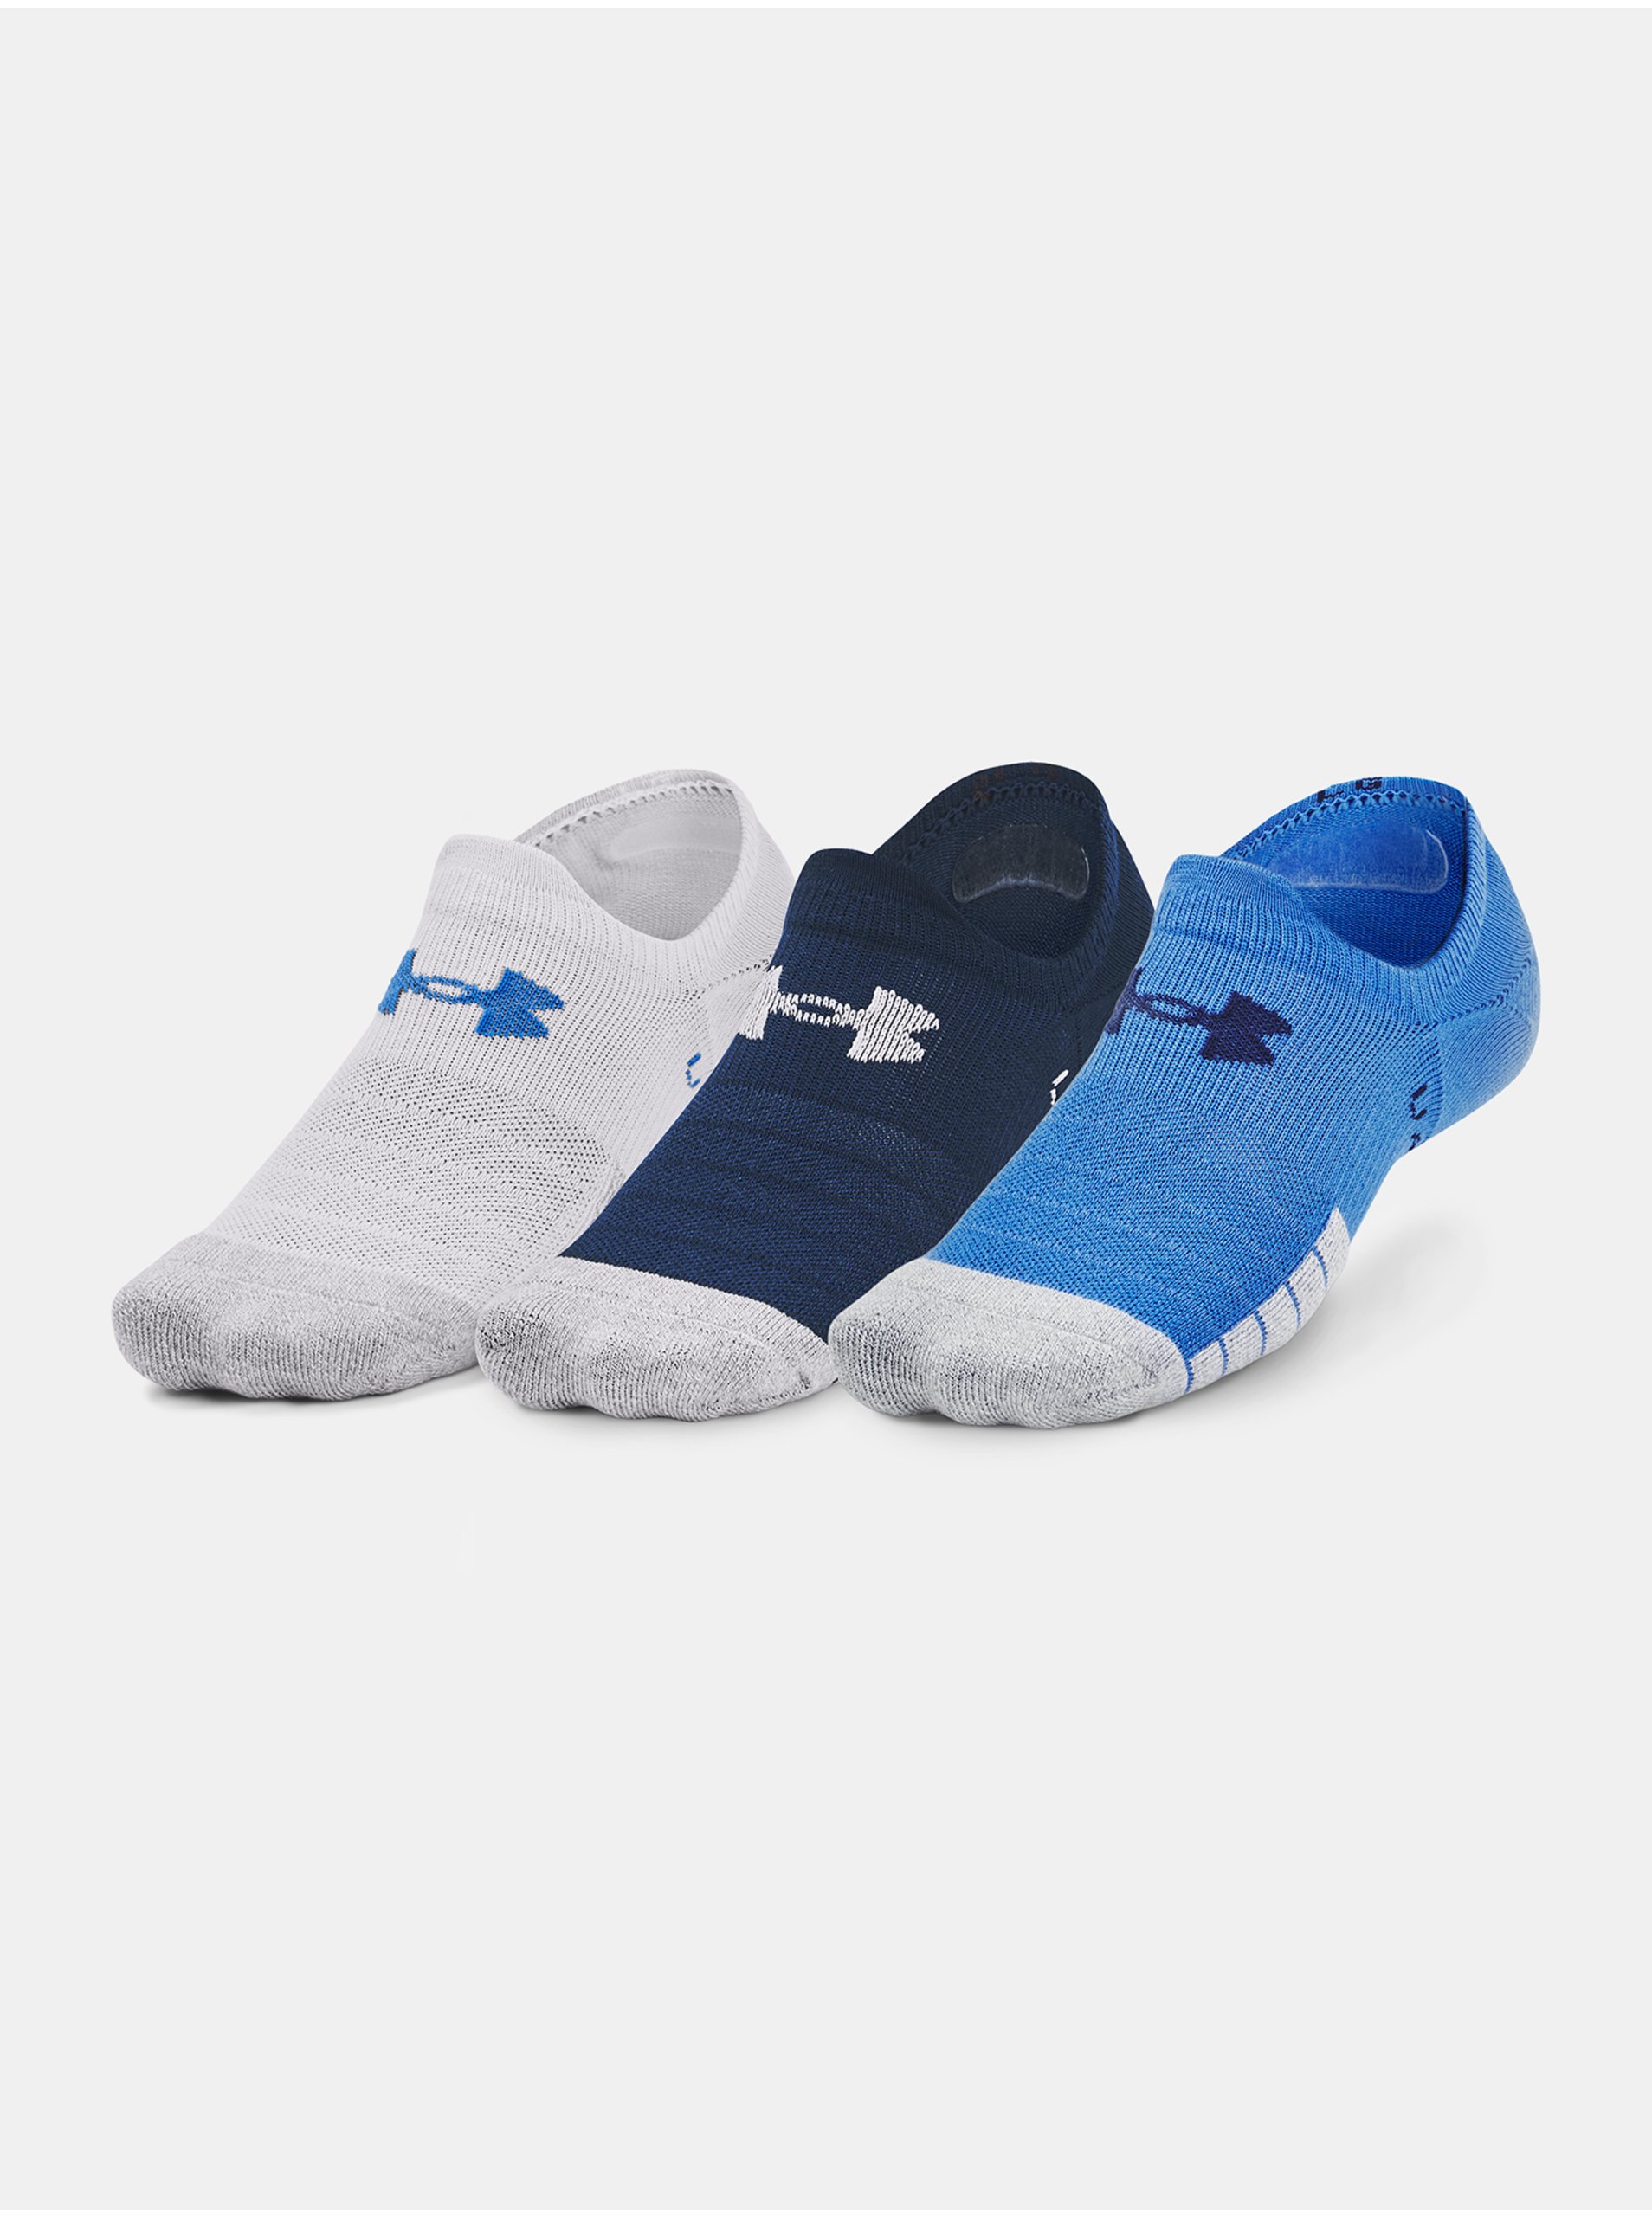 Levně Sada tří párů sportovních ponožek v bílé, tmavě modré a modré barvě Under Armour Heatgear